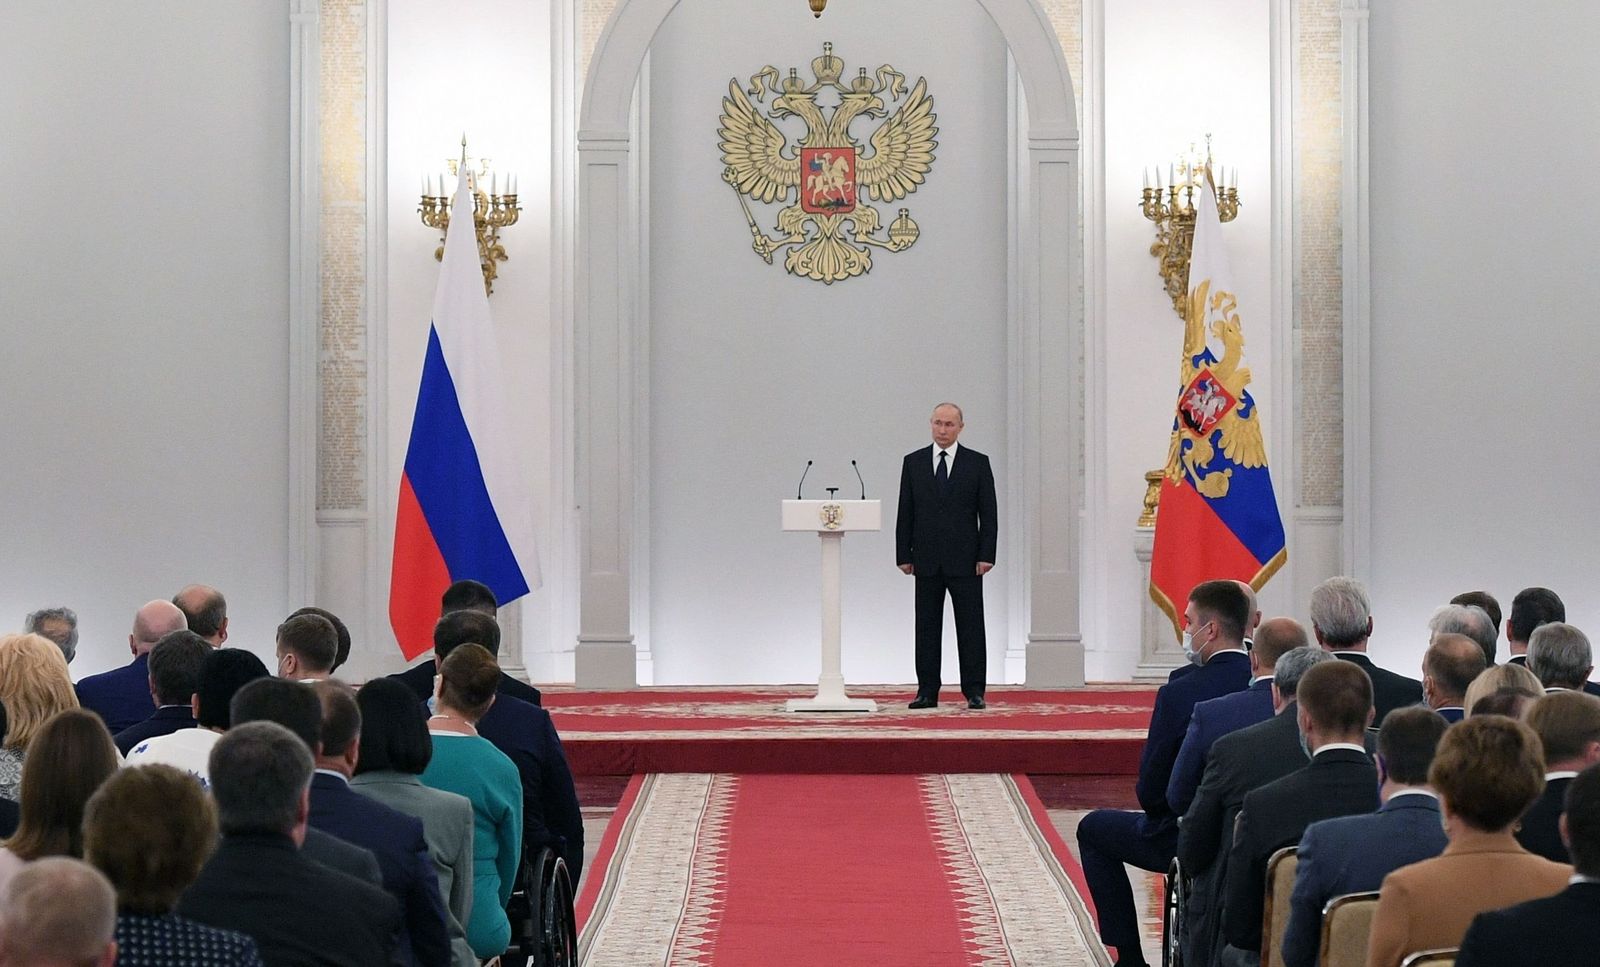 الرئيس الروسي فلاديمير بوتين يلتقي نواب مجلس الدوما بالبرلمان الروسي في الكرملين، 21 يونيو 2021 - AFP